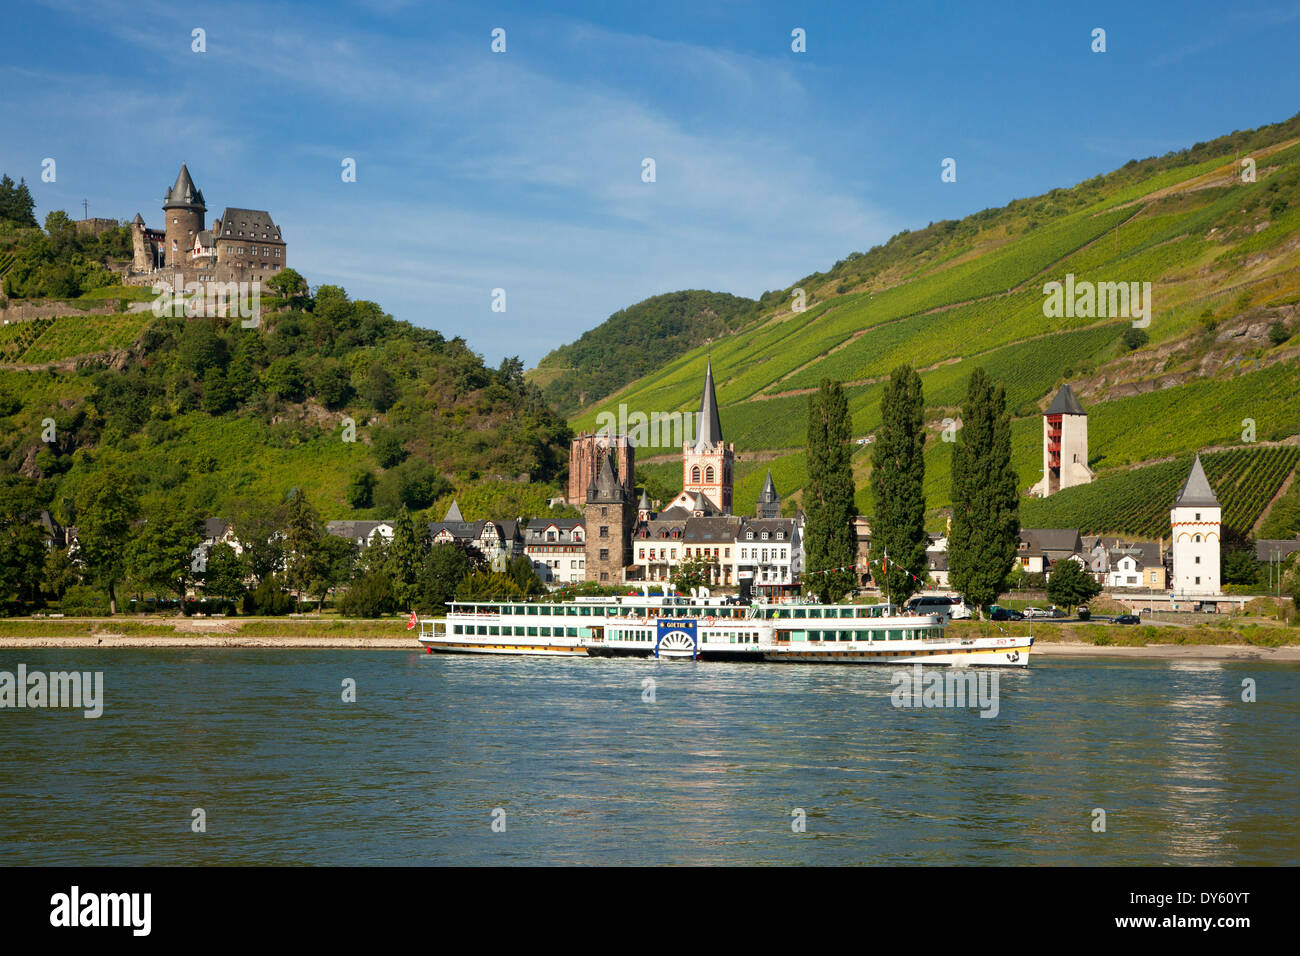 Ruota a palette vaporizzatore Goethe presso il fiume Reno, Bacharach con Castello Stahleck, Reno, Renania-Palatinato, Germania Foto Stock